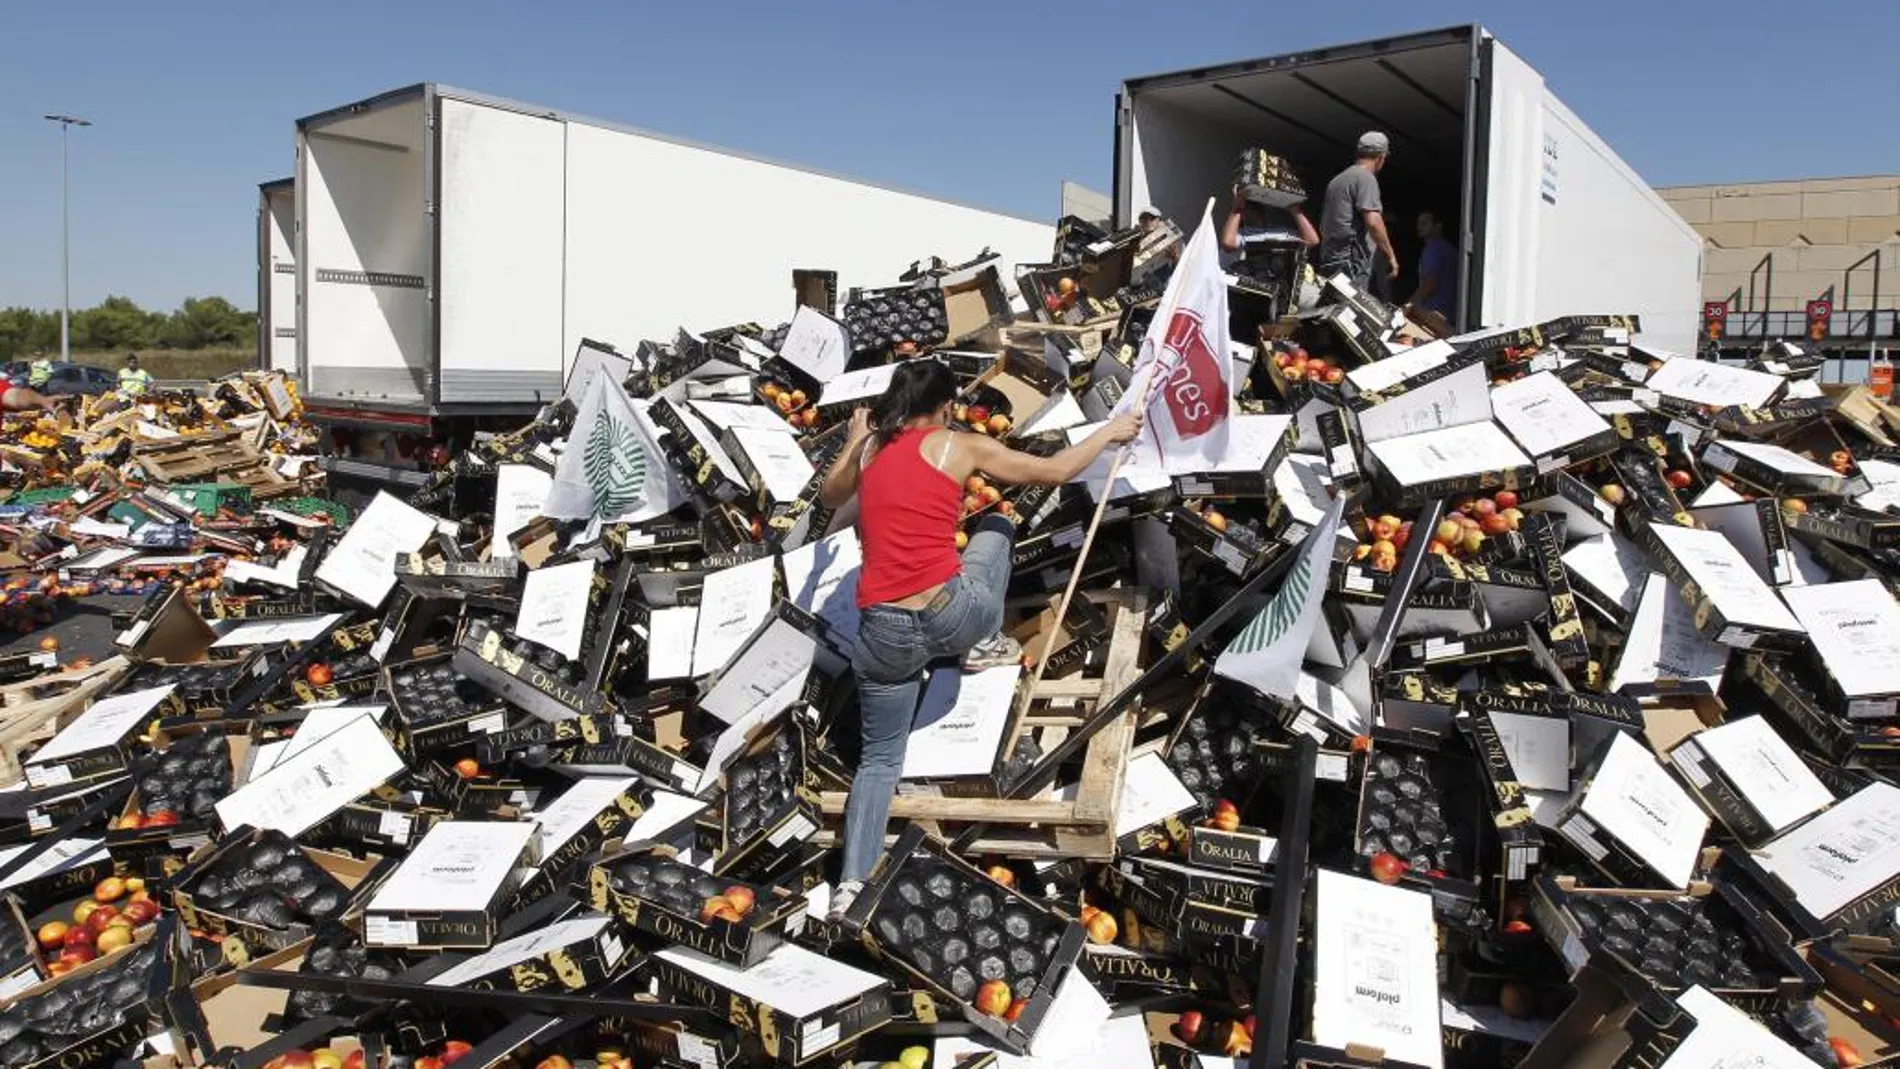 Imagen de 2011 de agricultores franceses destruyendo la carga de camiones españoles que transportan fruta y verduras